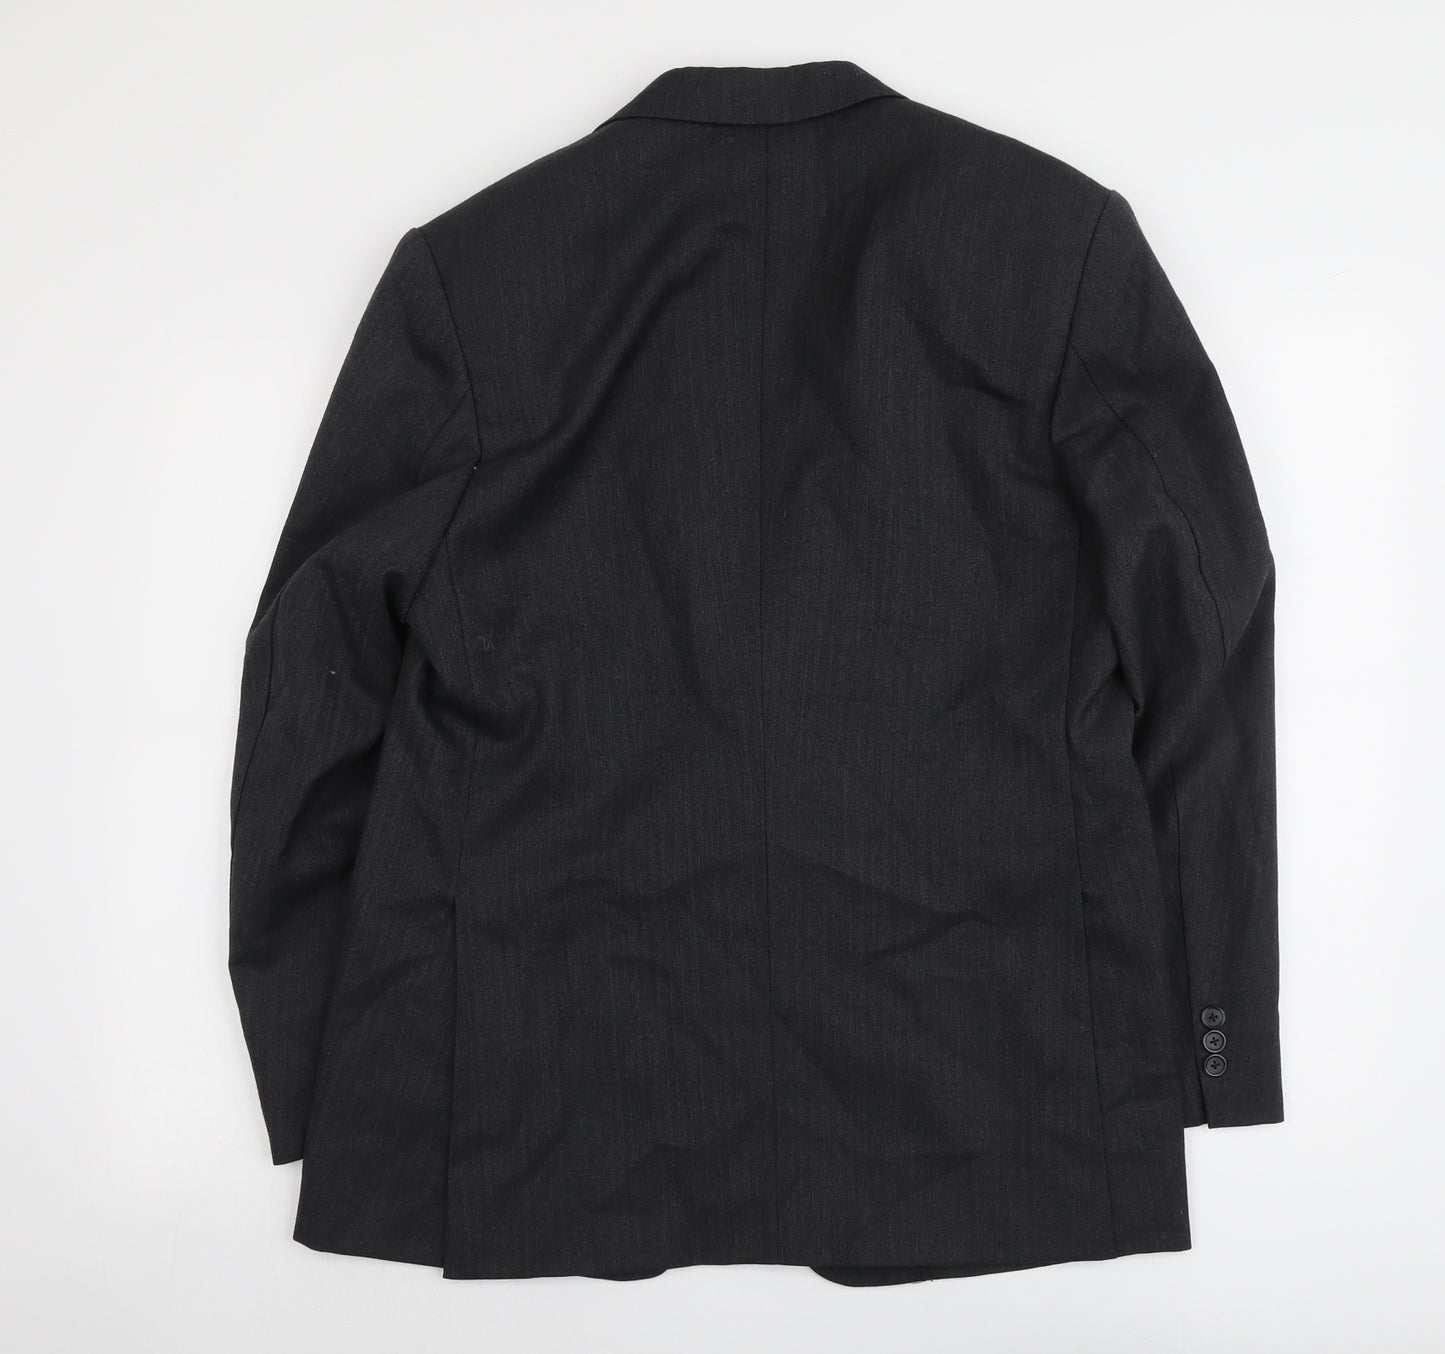 Sam's Mens Grey Striped Polyester Jacket Suit Jacket Size 42 Regular